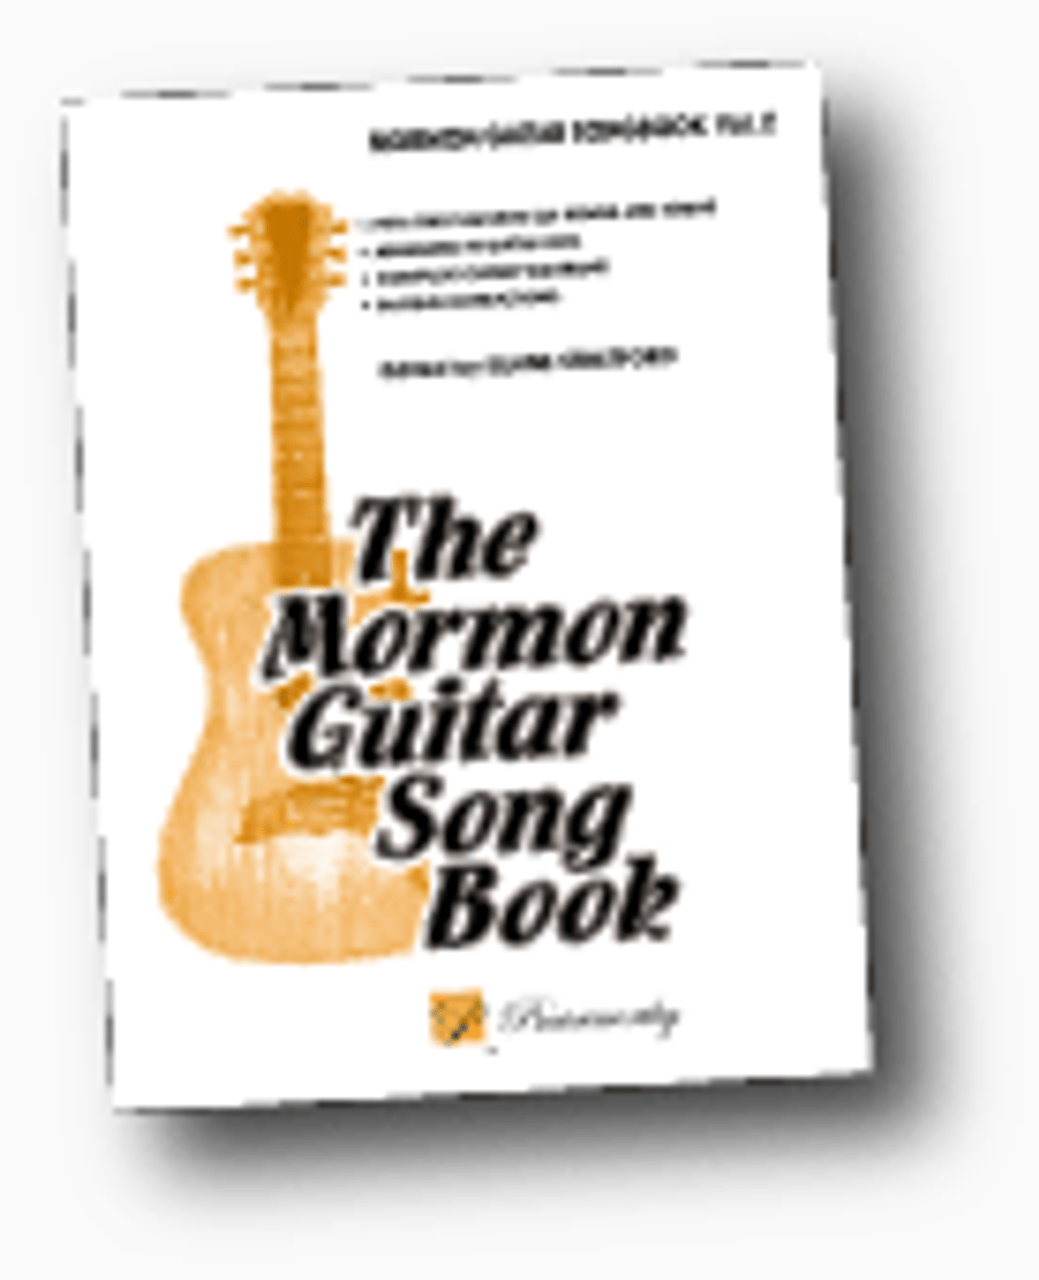 Mormon Guitar Songbook Vol 2 *